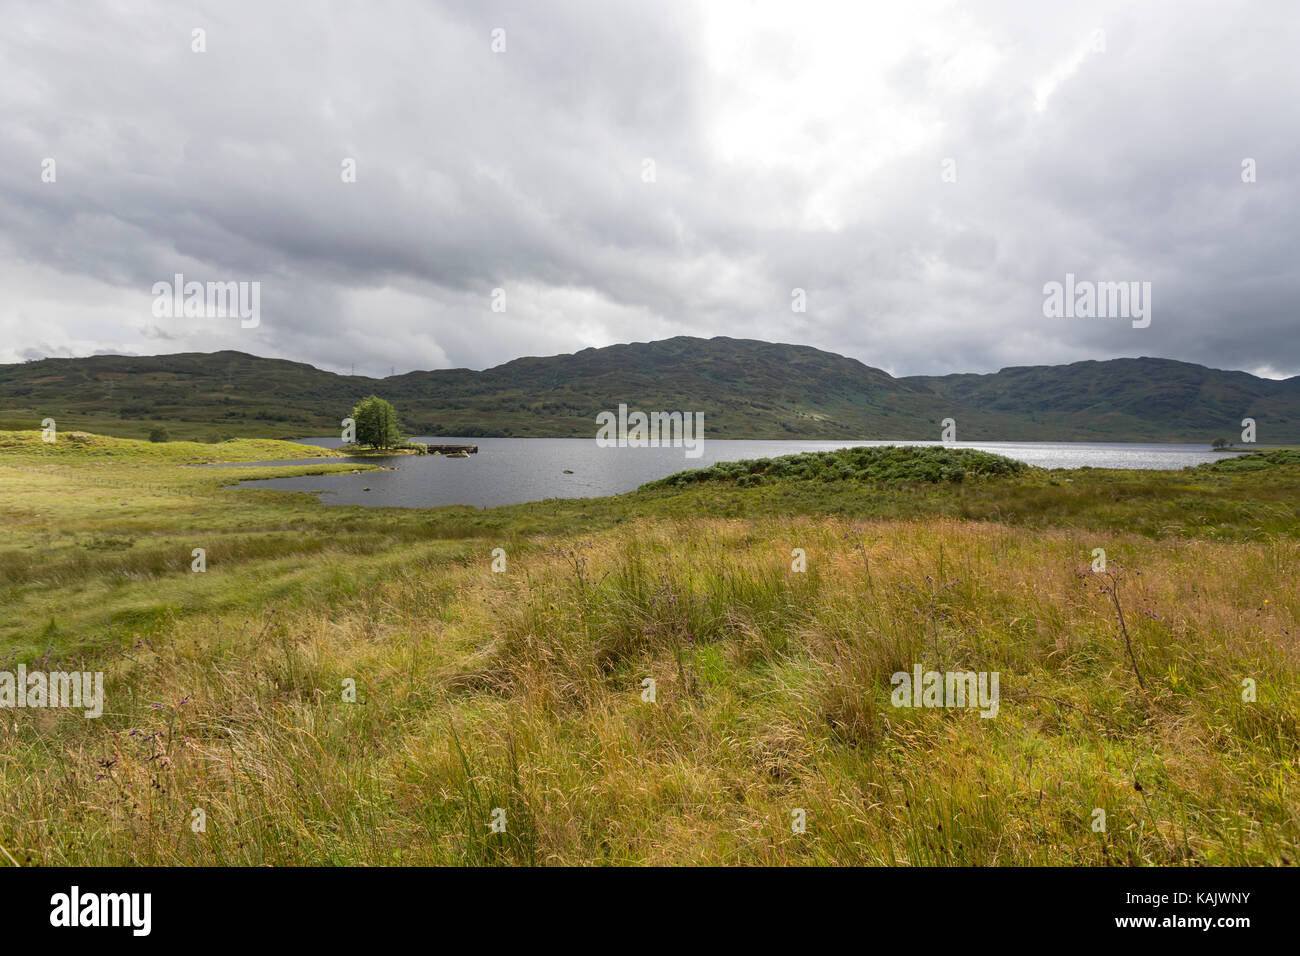 Loch arklet, Loch Lomond et les Trossachs national park, Ecosse Banque D'Images